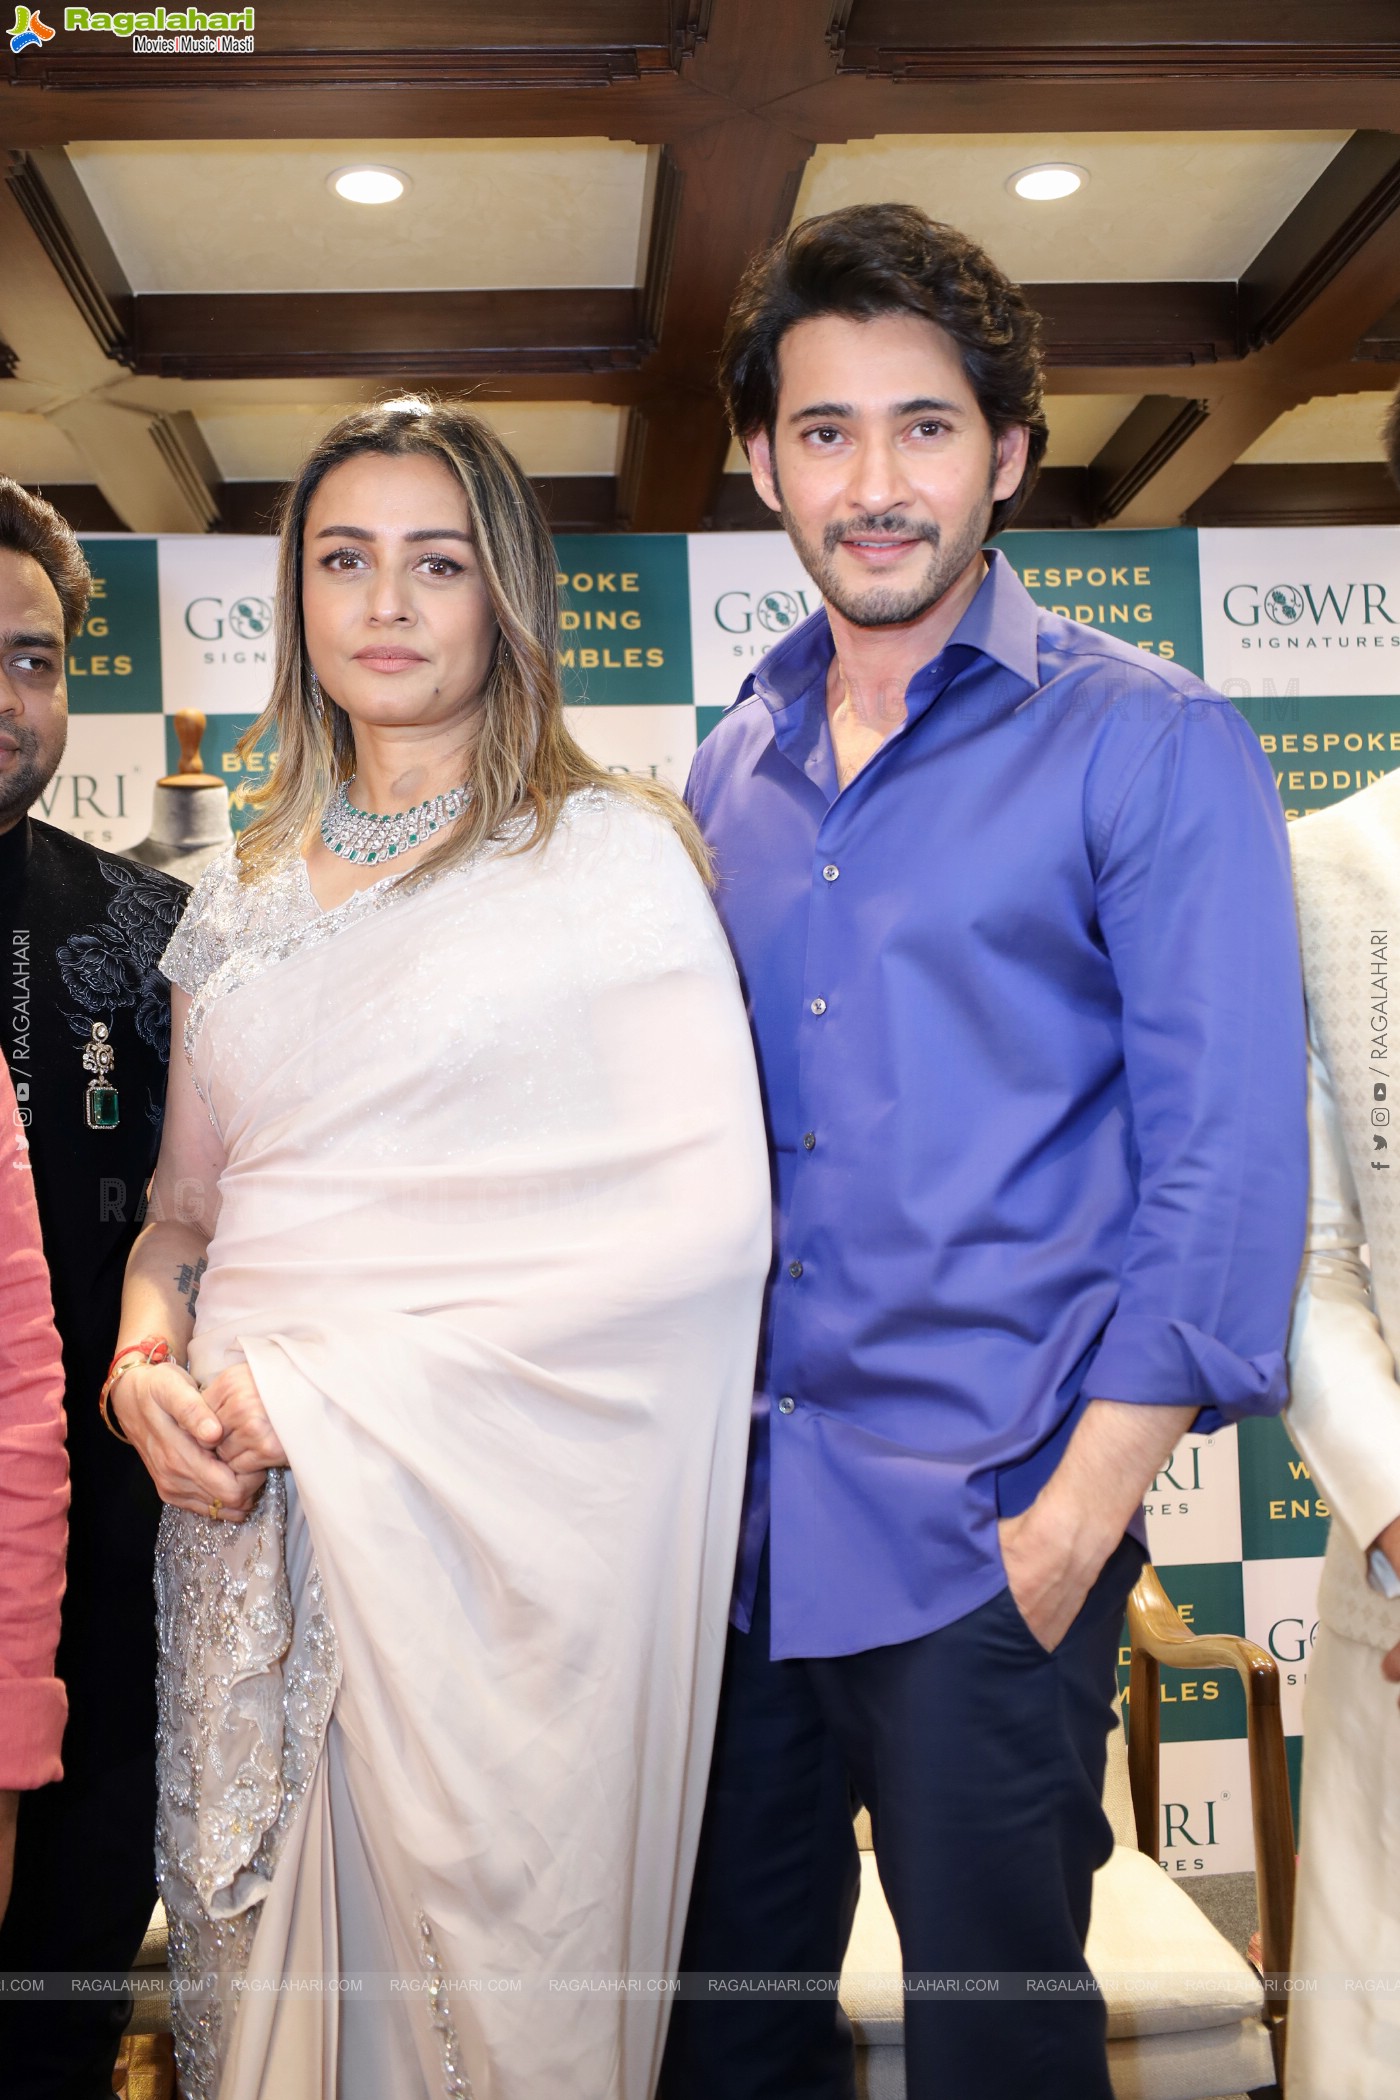 Super Star Mahesh Babu Launch Gowri Signatures Store